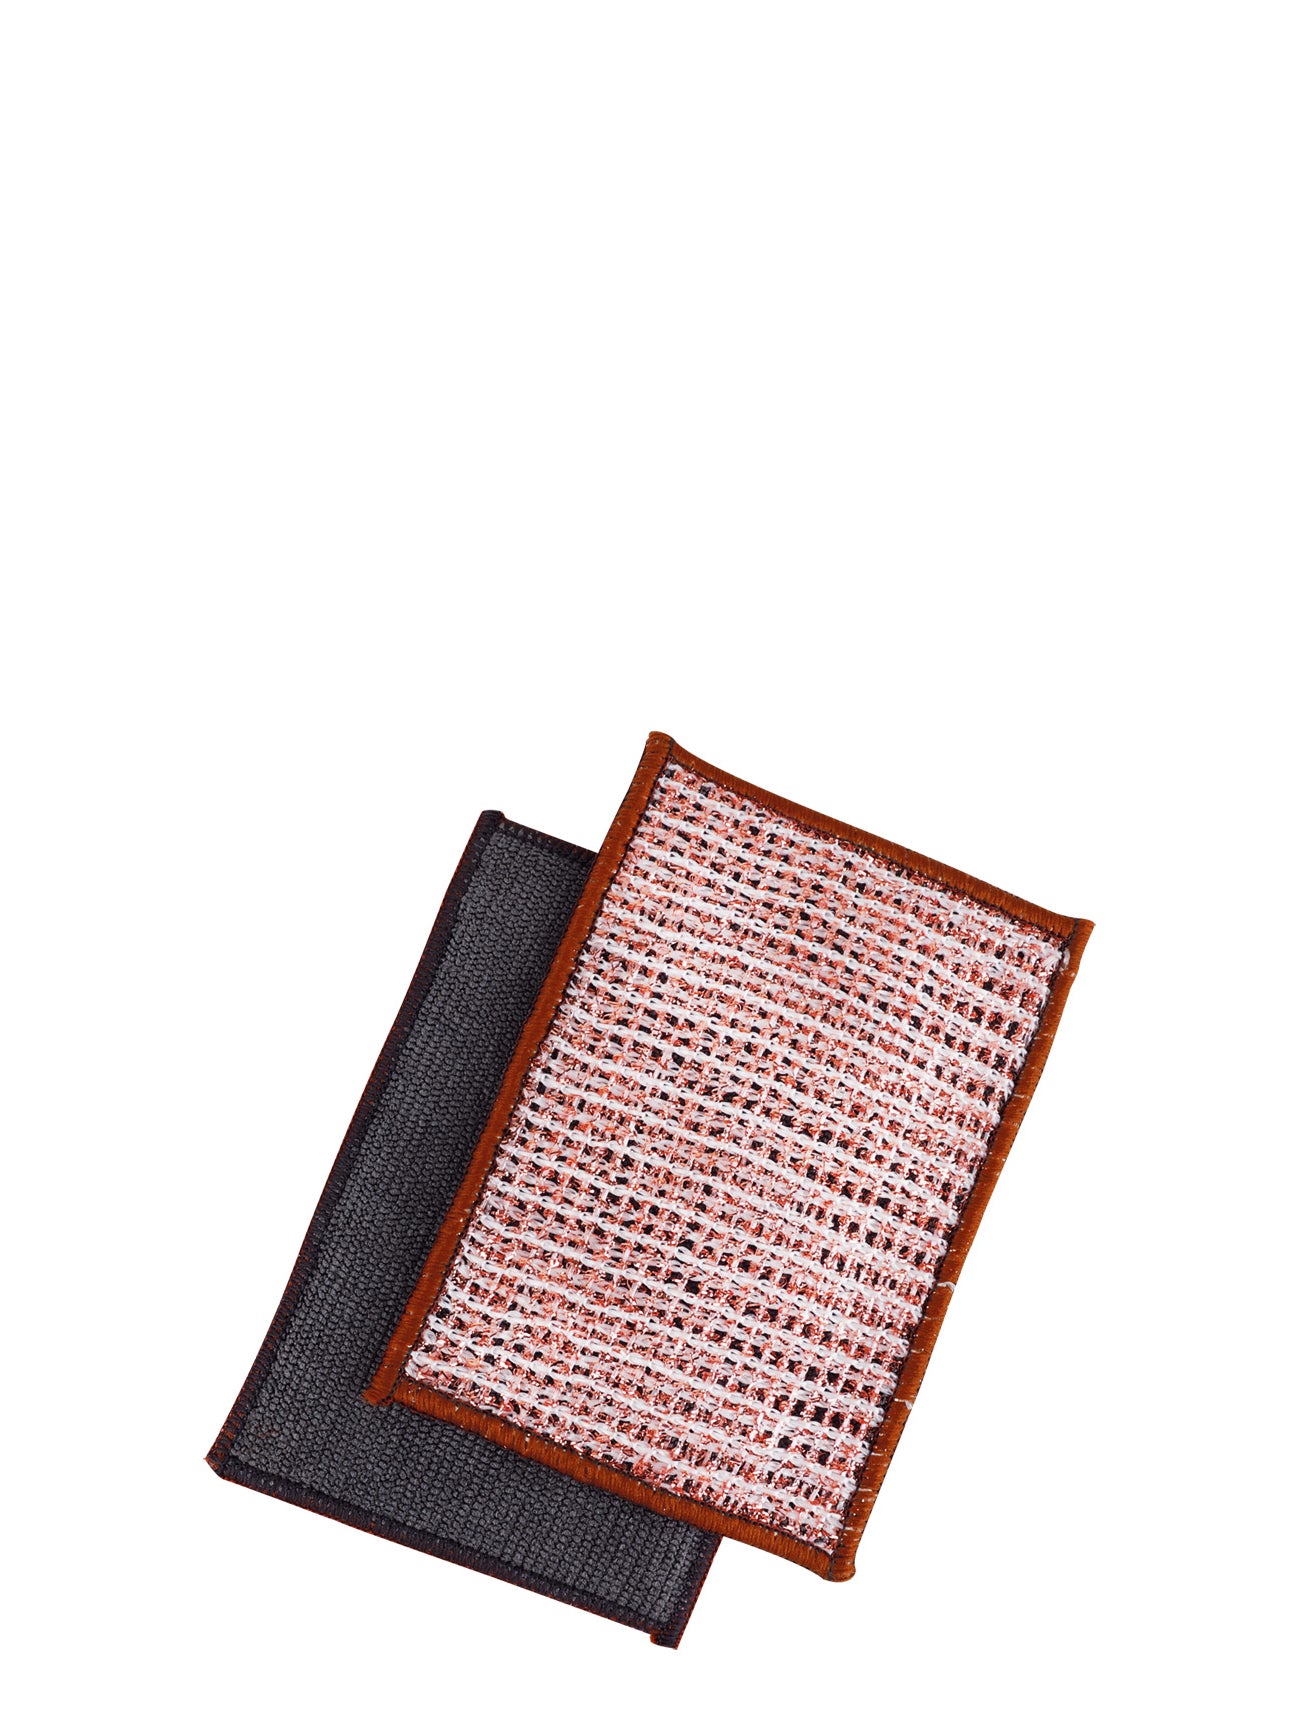 Copper microfiber cloth